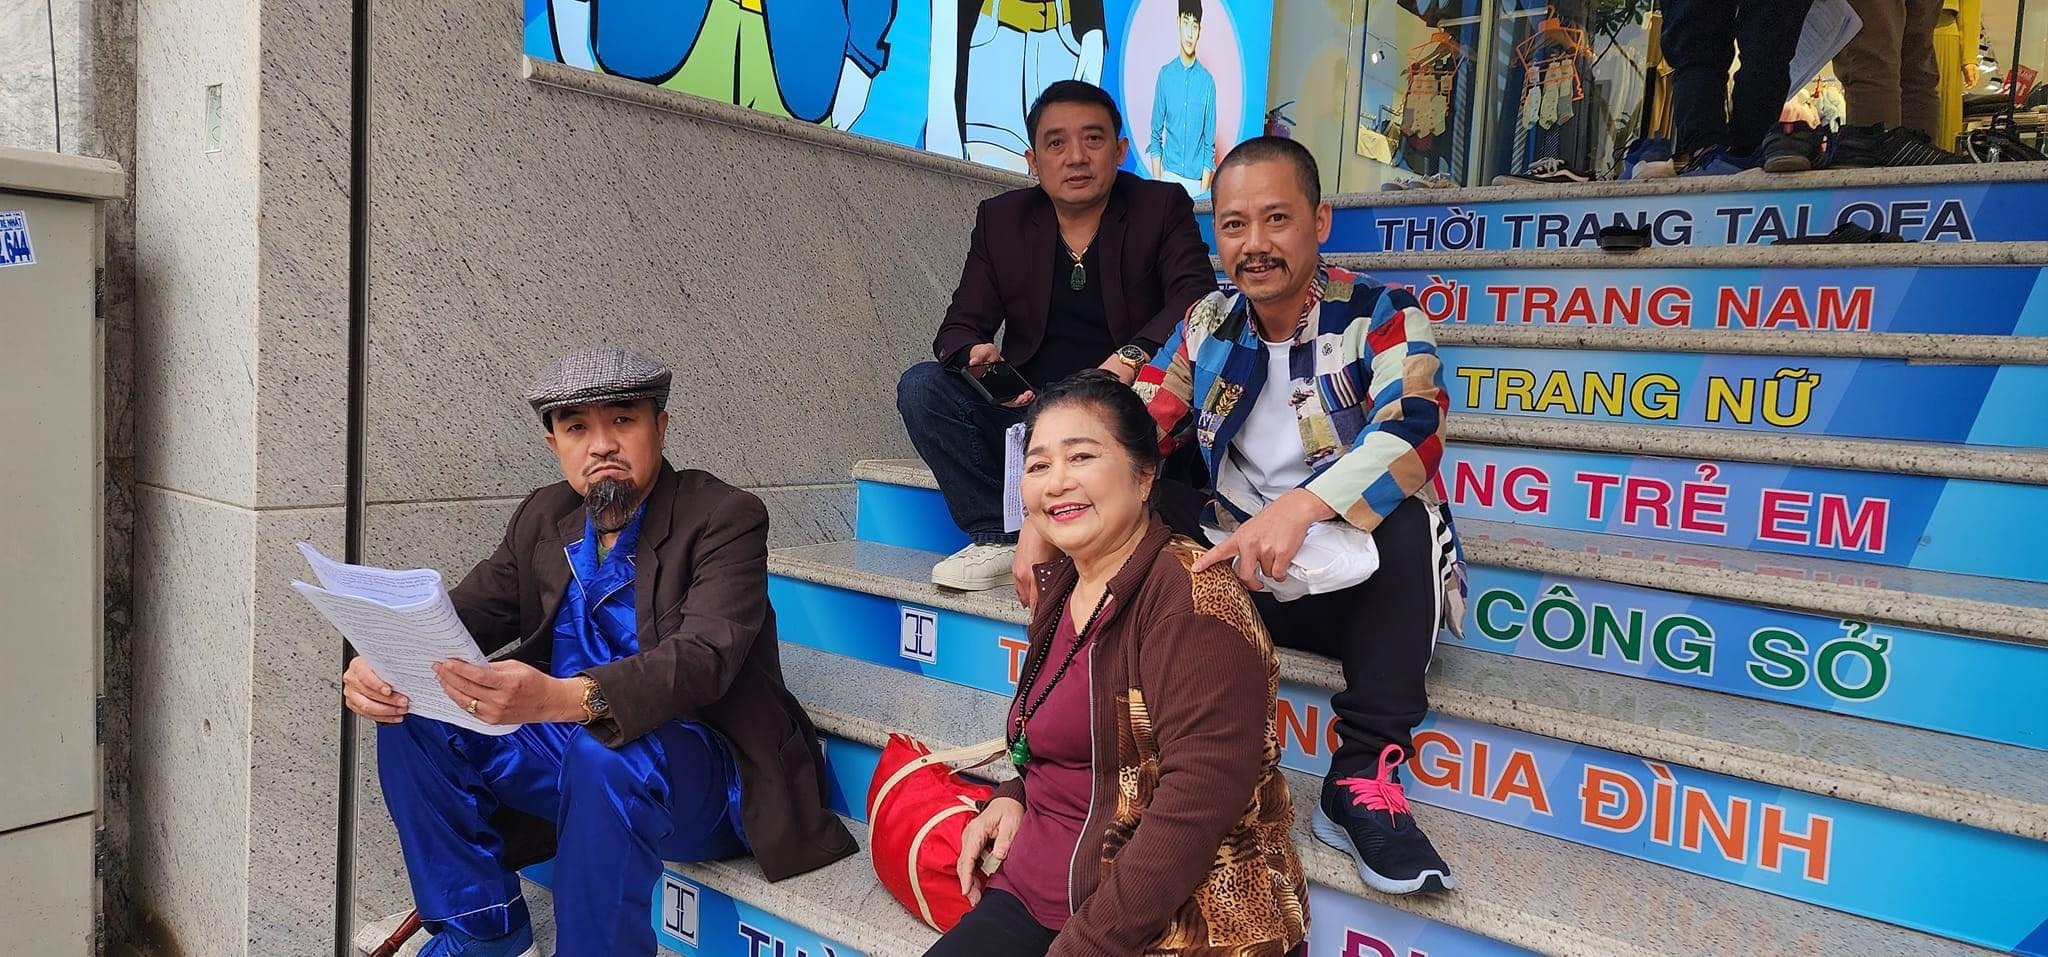 Nghệ sĩ Kim Xuyến ở tuổi 78: Hay gặp gỡ Lê Mai, vẫn đi làm quảng cáo - 2